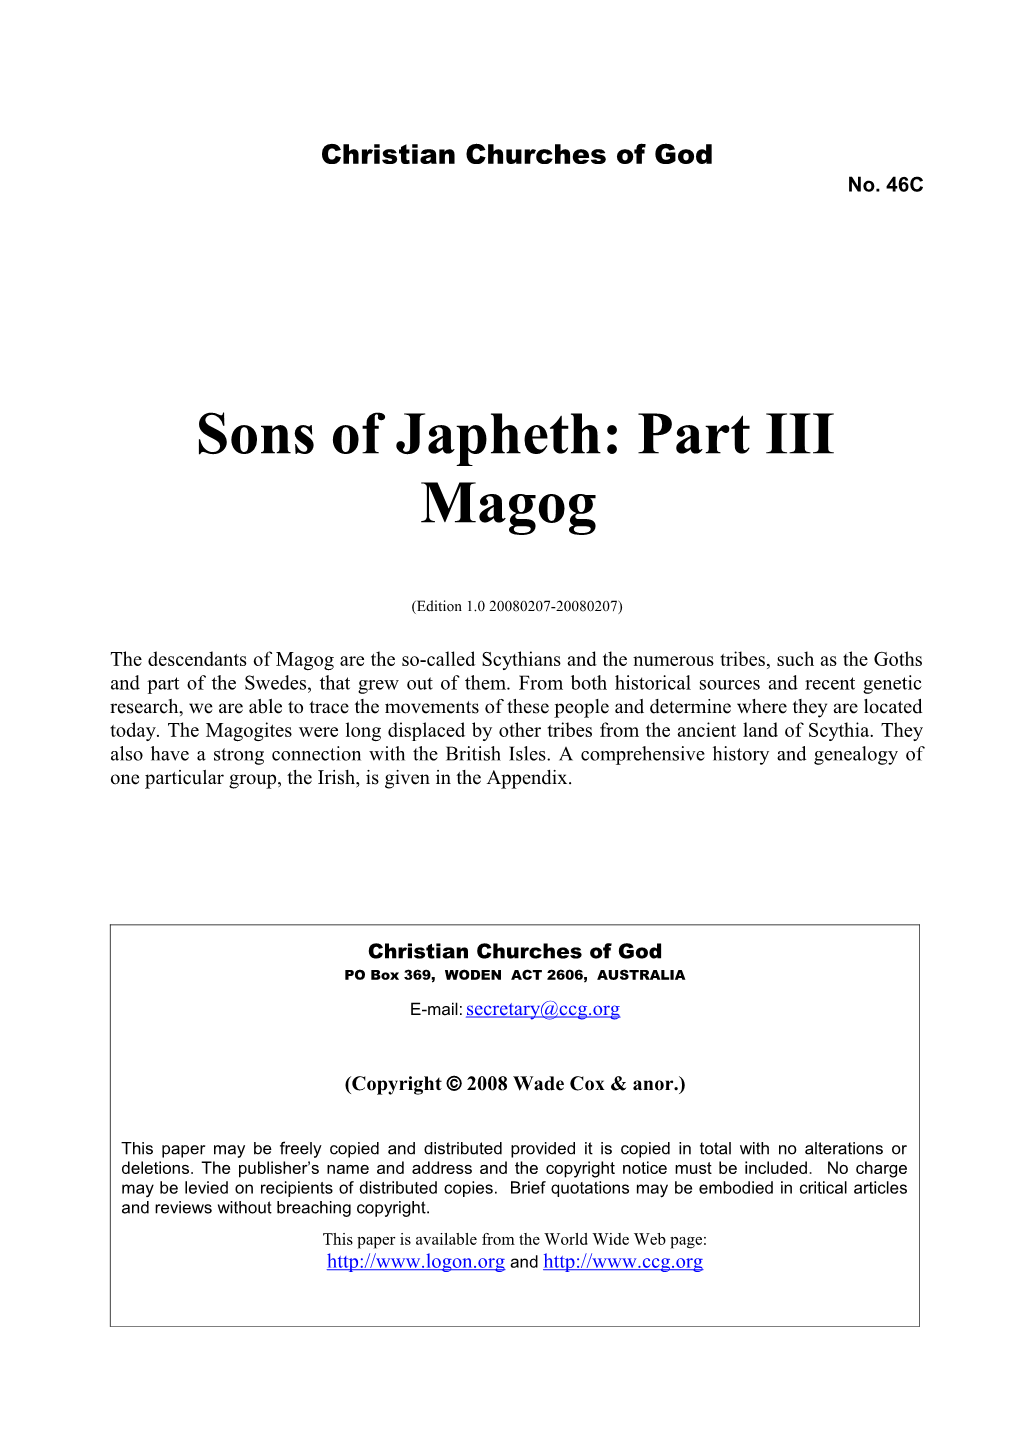 Sons of Japheth: Part III Magog (No. 46C)